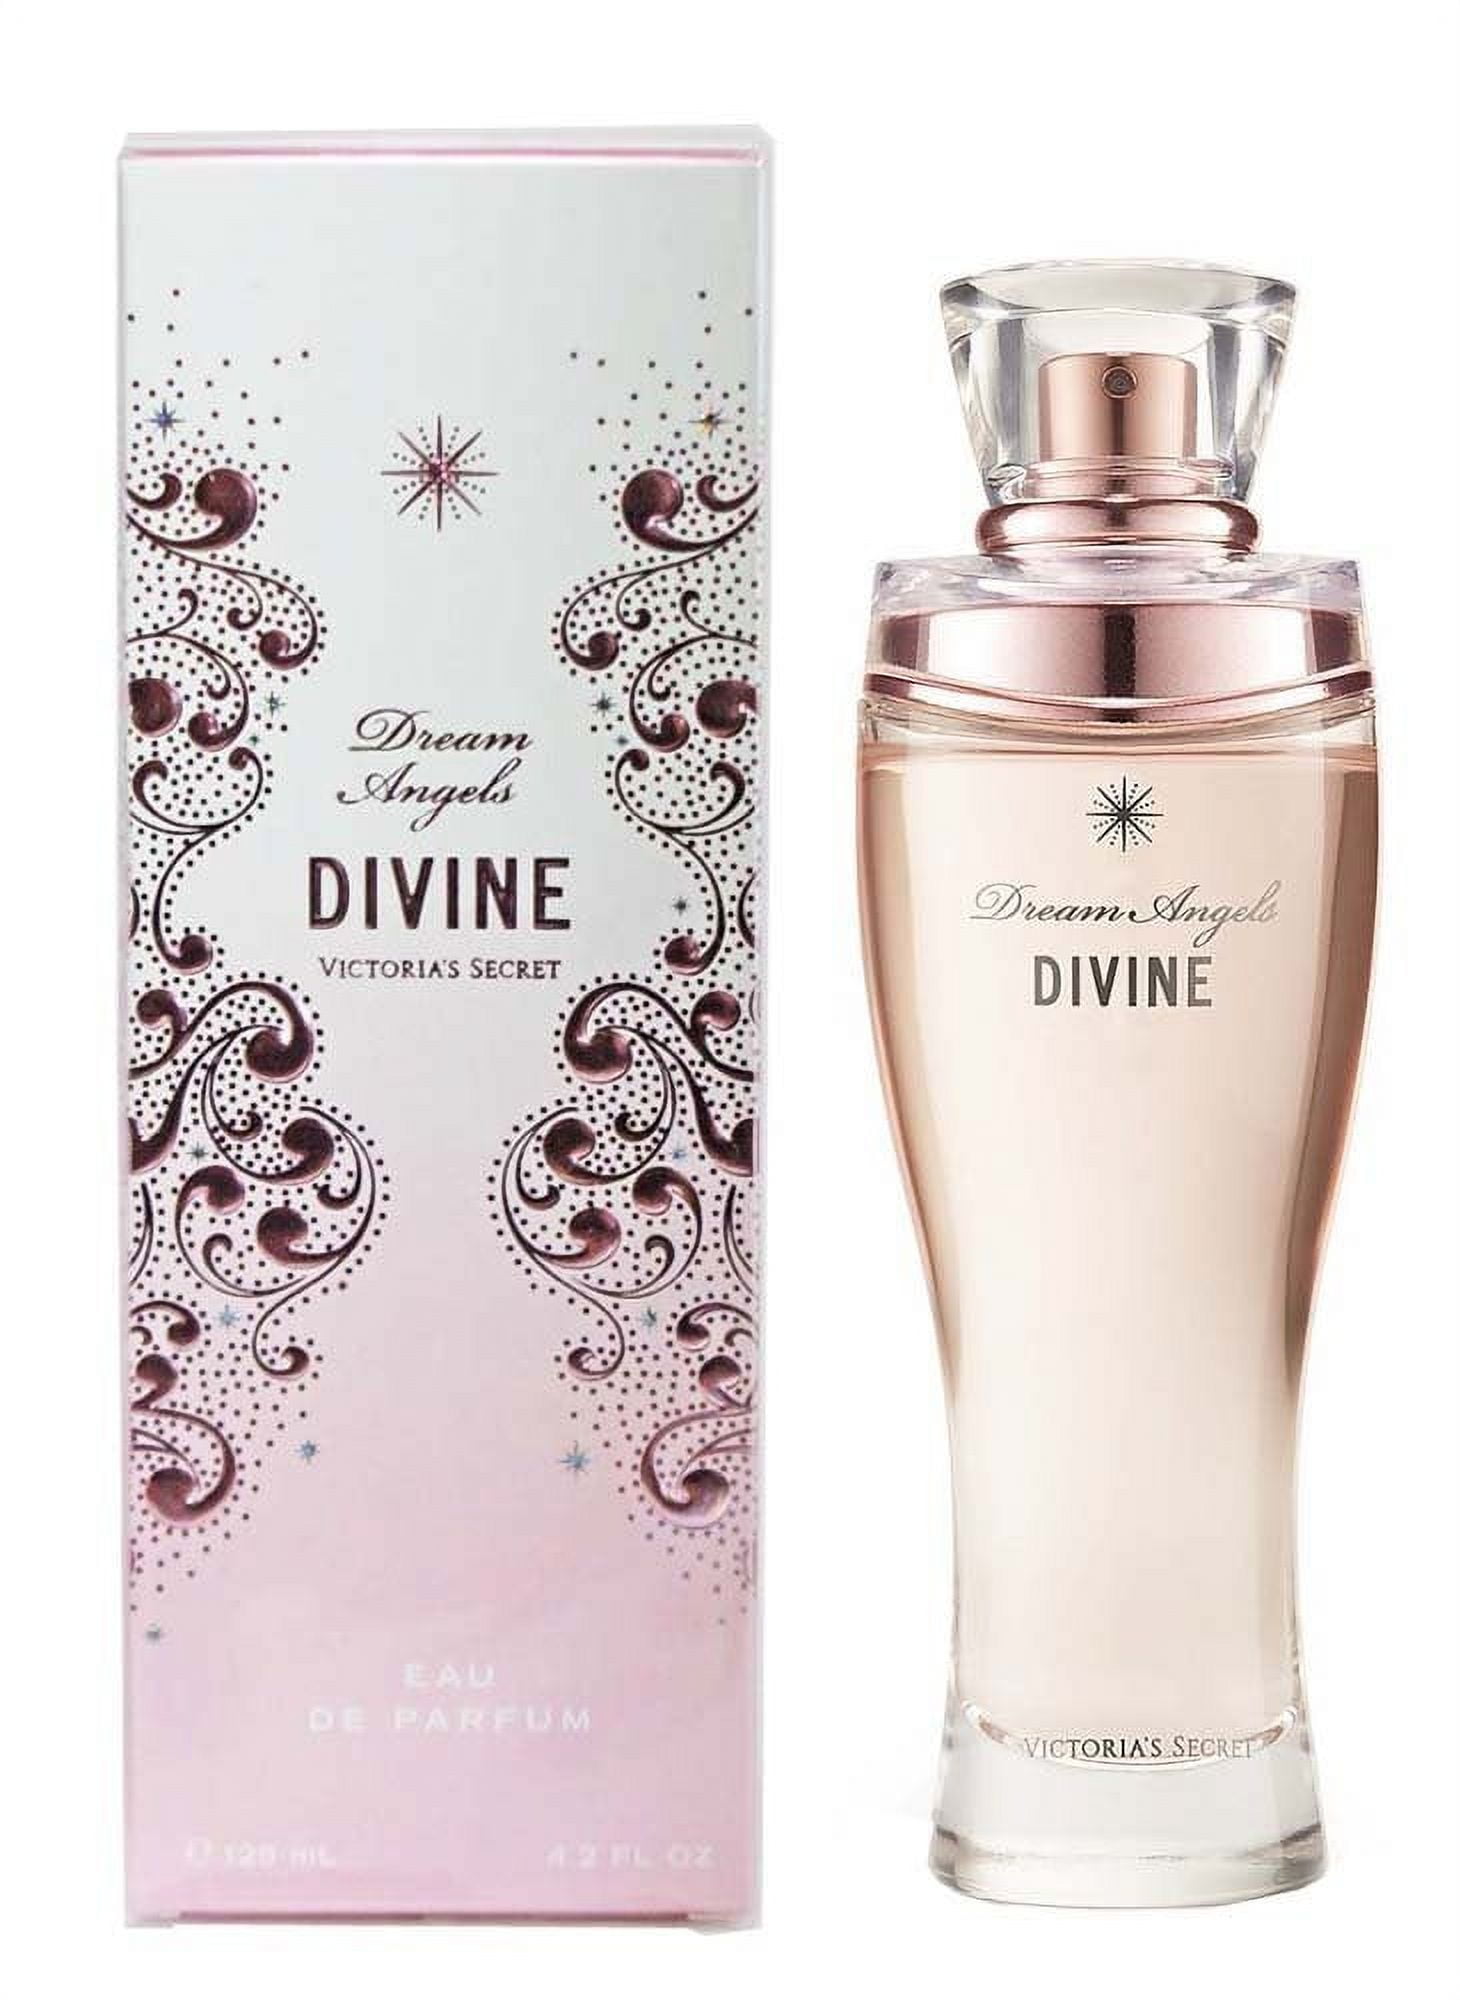 Victoria's Secret Dream Angels Divine Eau De Parfum Spray 4.2 fl oz